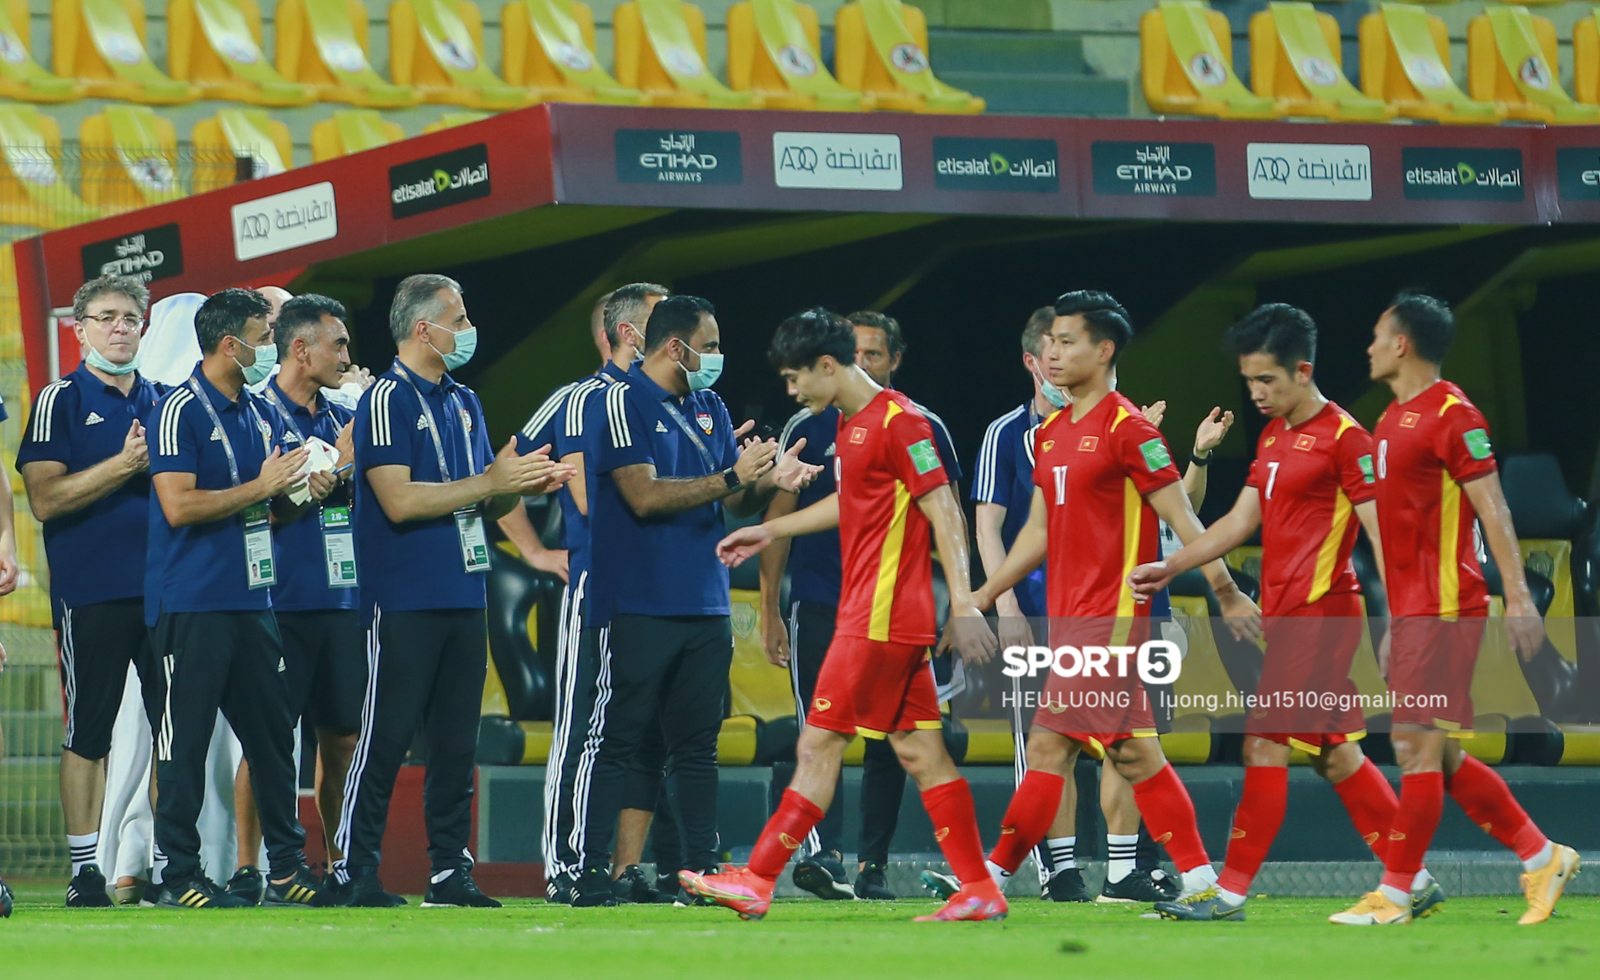 Ban huấn luyện UAE xếp hàng, vỗ tay động viên tuyển Việt Nam sau thất bại - Ảnh 1.